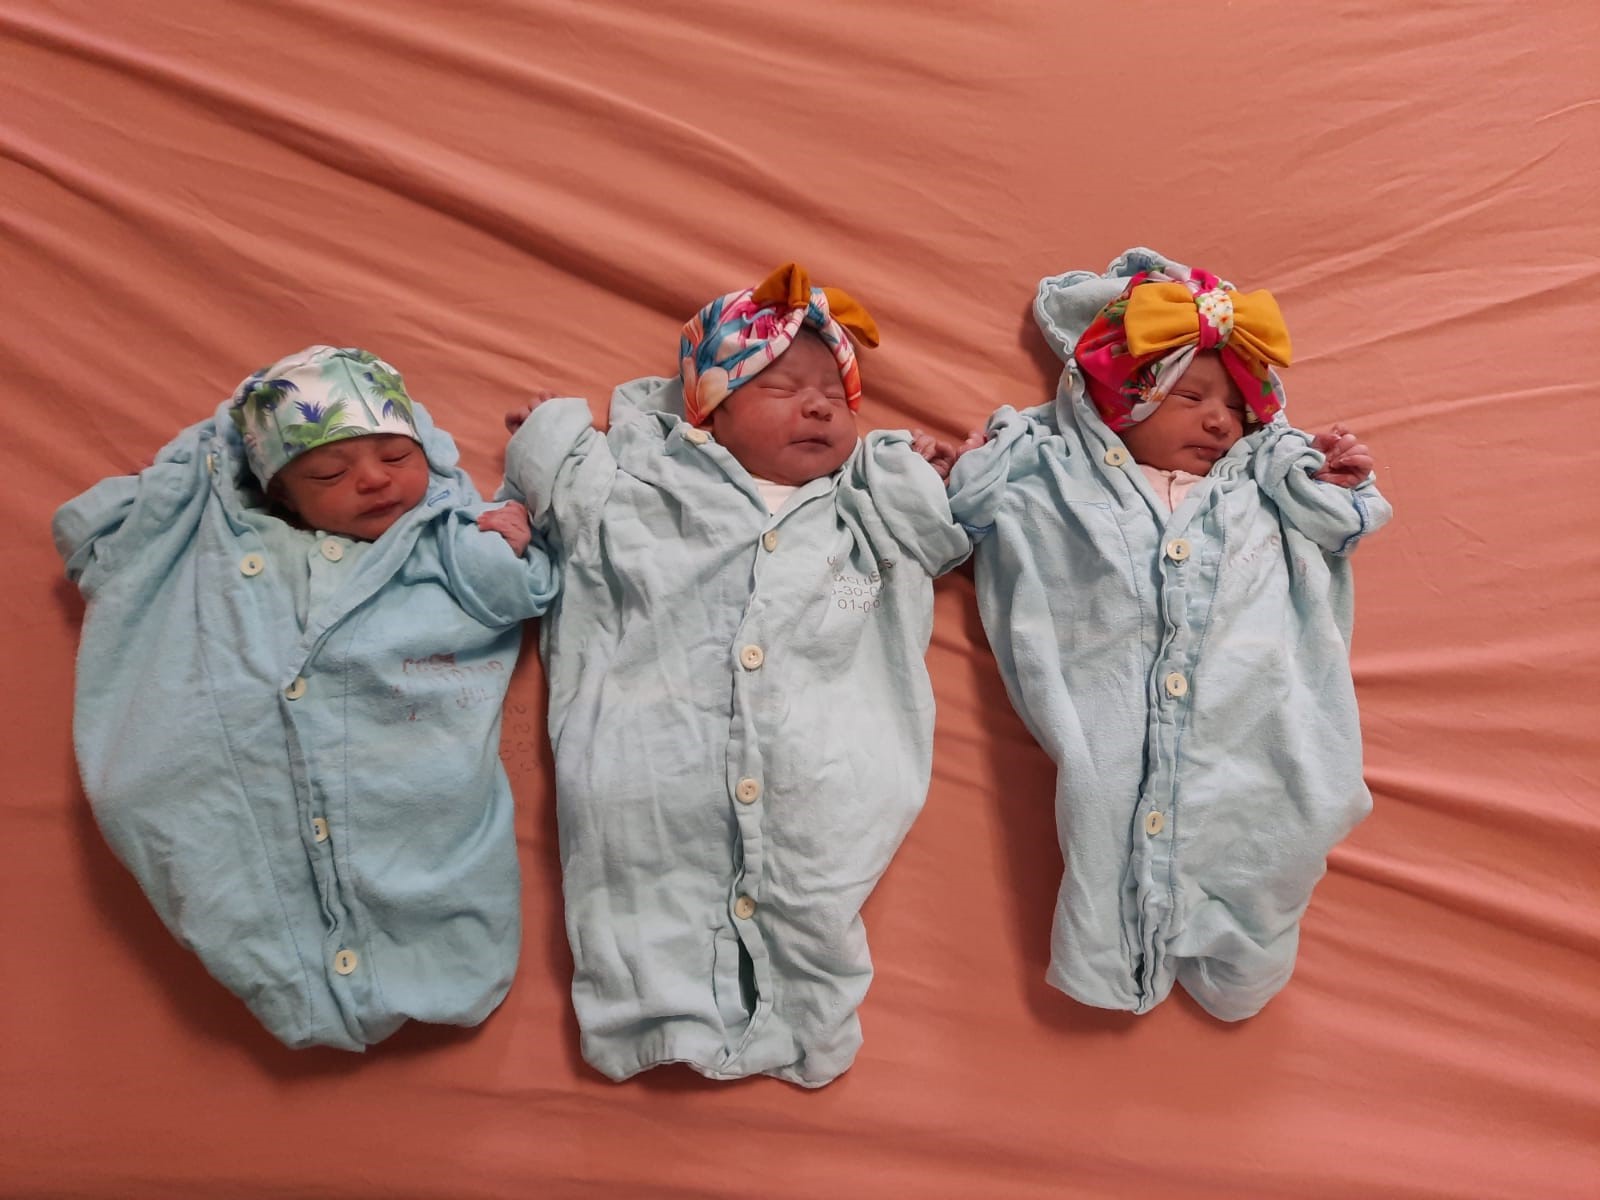 Bebés nacidos en el Hospital Tony Facio son vestidos con atuendos de la  cultura afrodesciente. - Costa Rica 